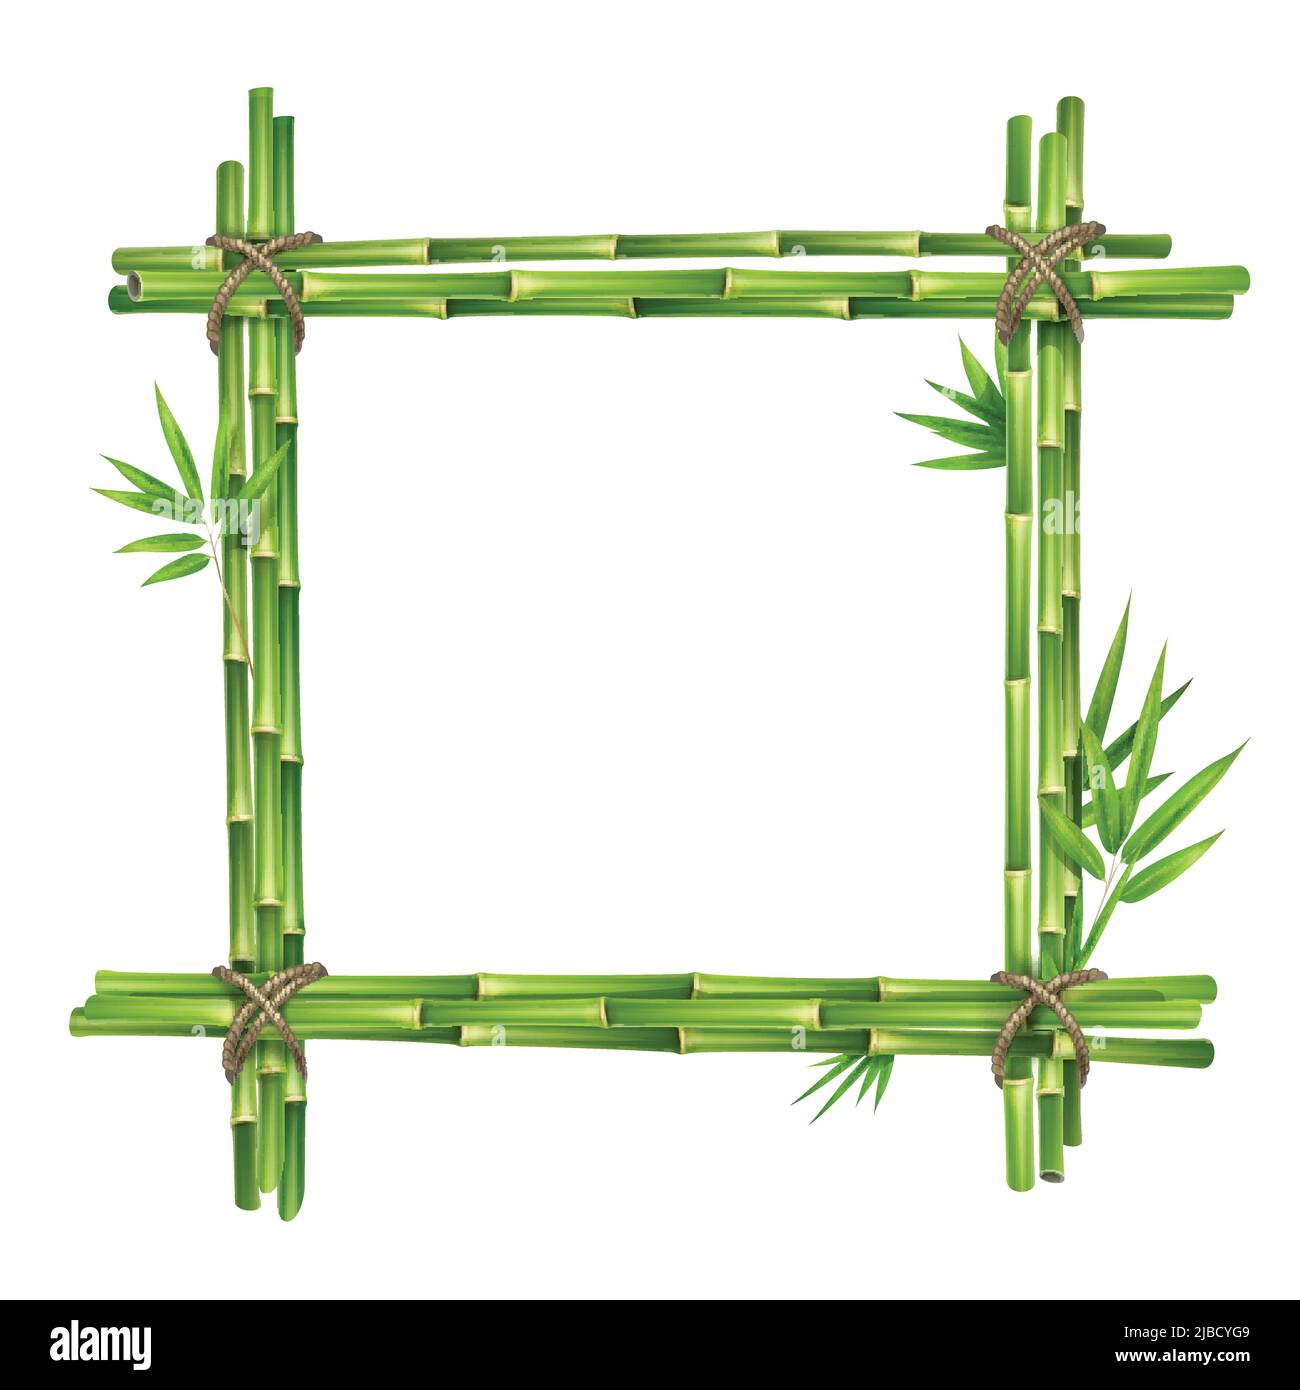 Cadre vectoriel à partir de tiges et de feuilles de bambou attachées avec une corde isolée sur fond blanc Illustration de Vecteur